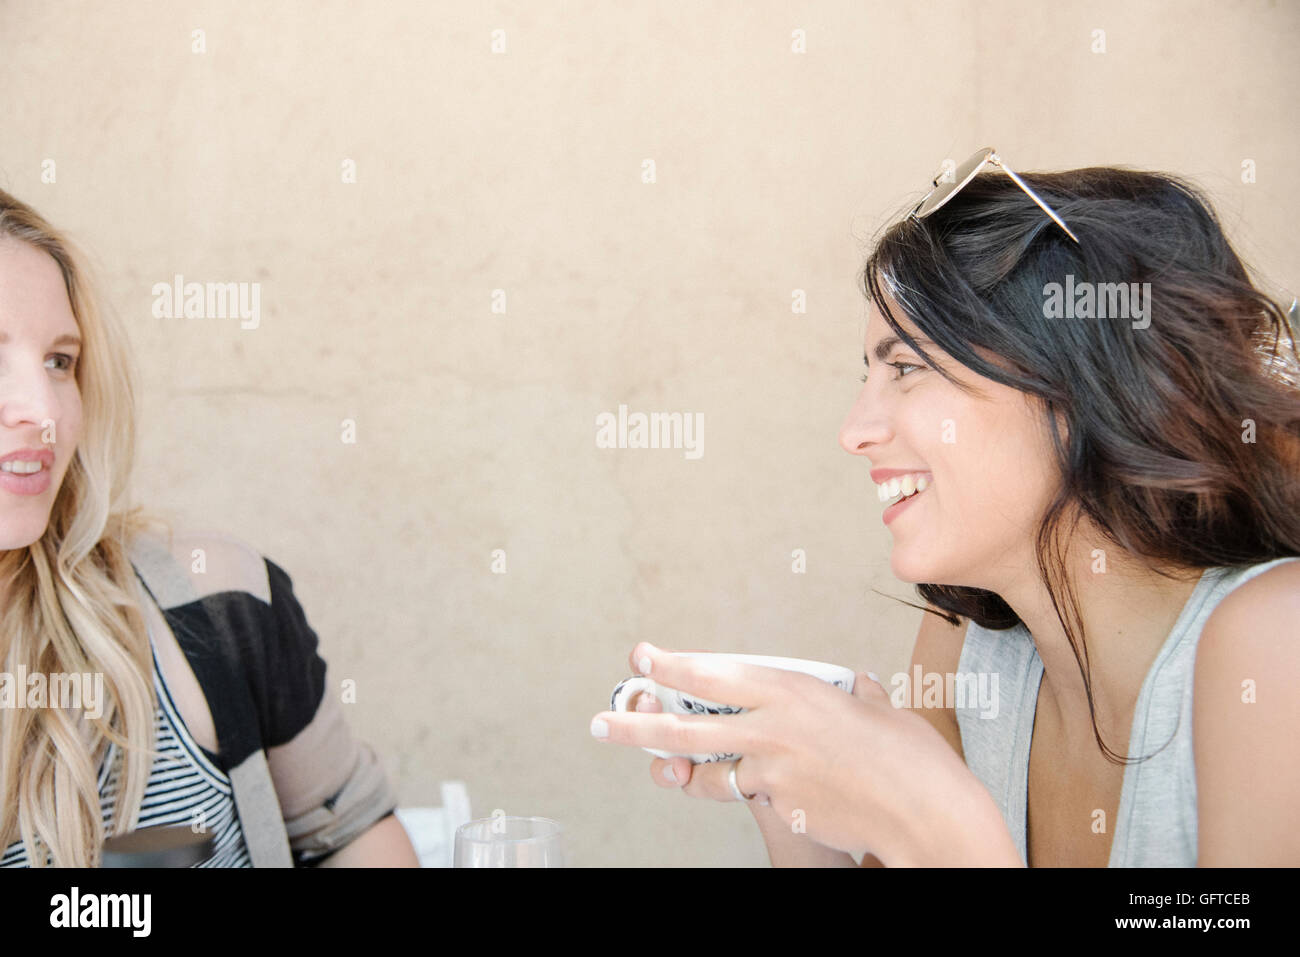 Porträt einer jungen Frau mit langen braunen Haaren hält eine Tasse im Chat an einen Freund Stockfoto